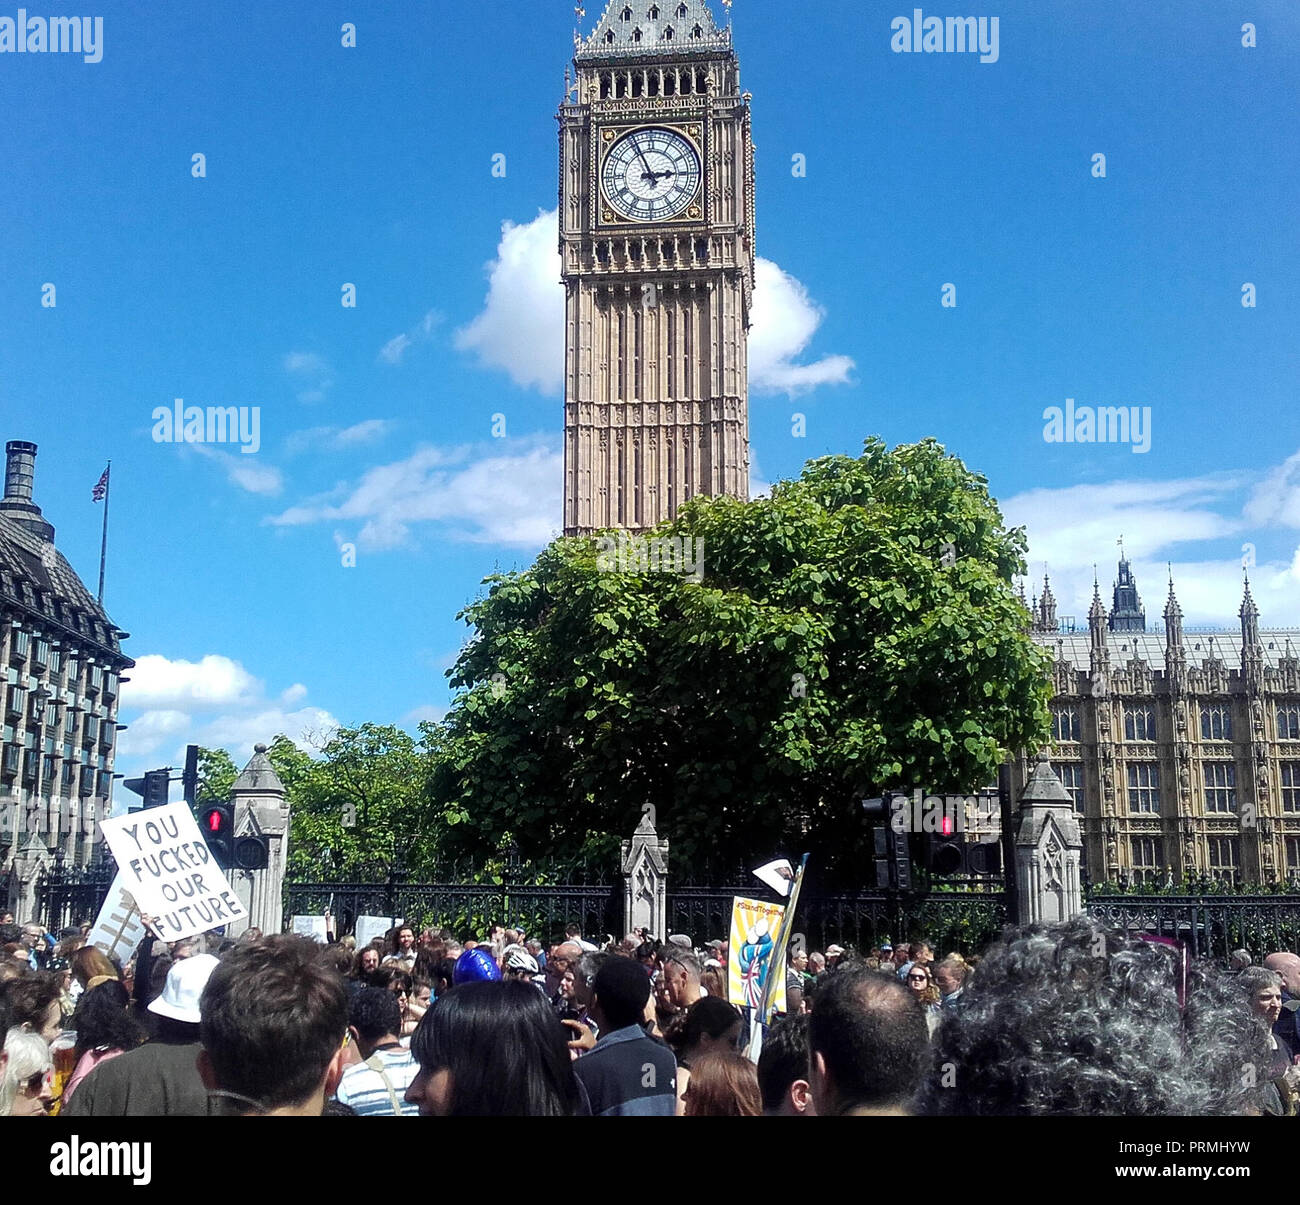 Londra, UK, 2 luglio 2016. 'Marco per l'Europa", Anti-Brexit protesta. I manifestanti in piazza del Parlamento. Foto Stock